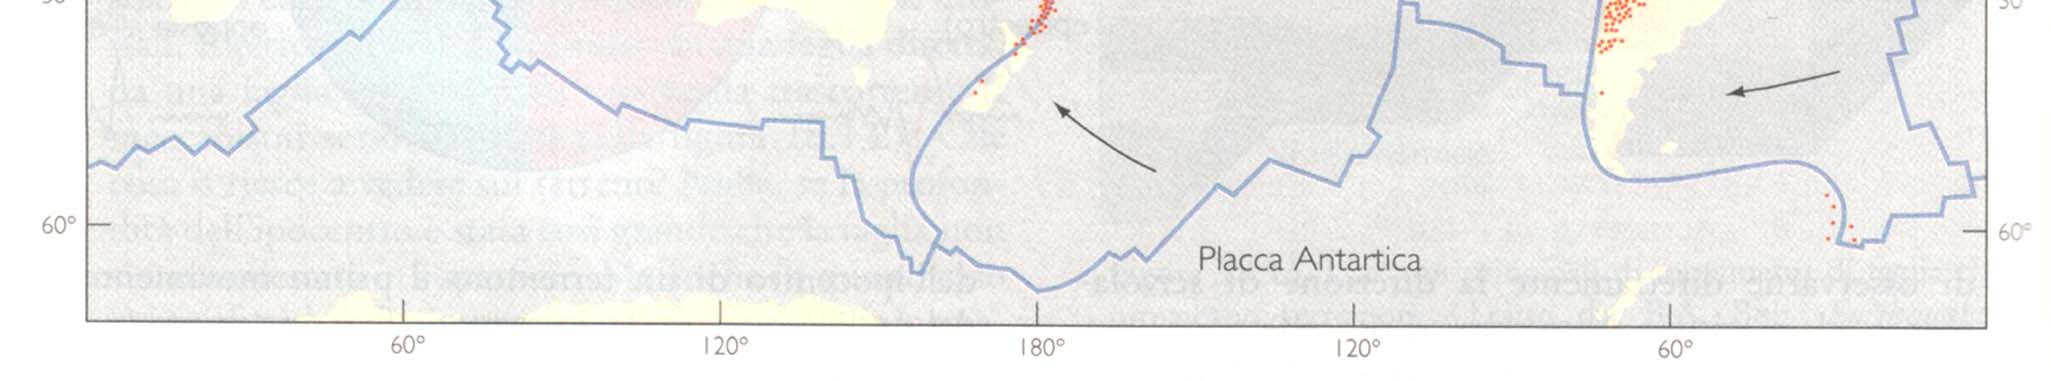 GEODINAMICA TETTONICA GLOBALE Epicentri di terremoti > 100 km di profondità in un intervallo di 6